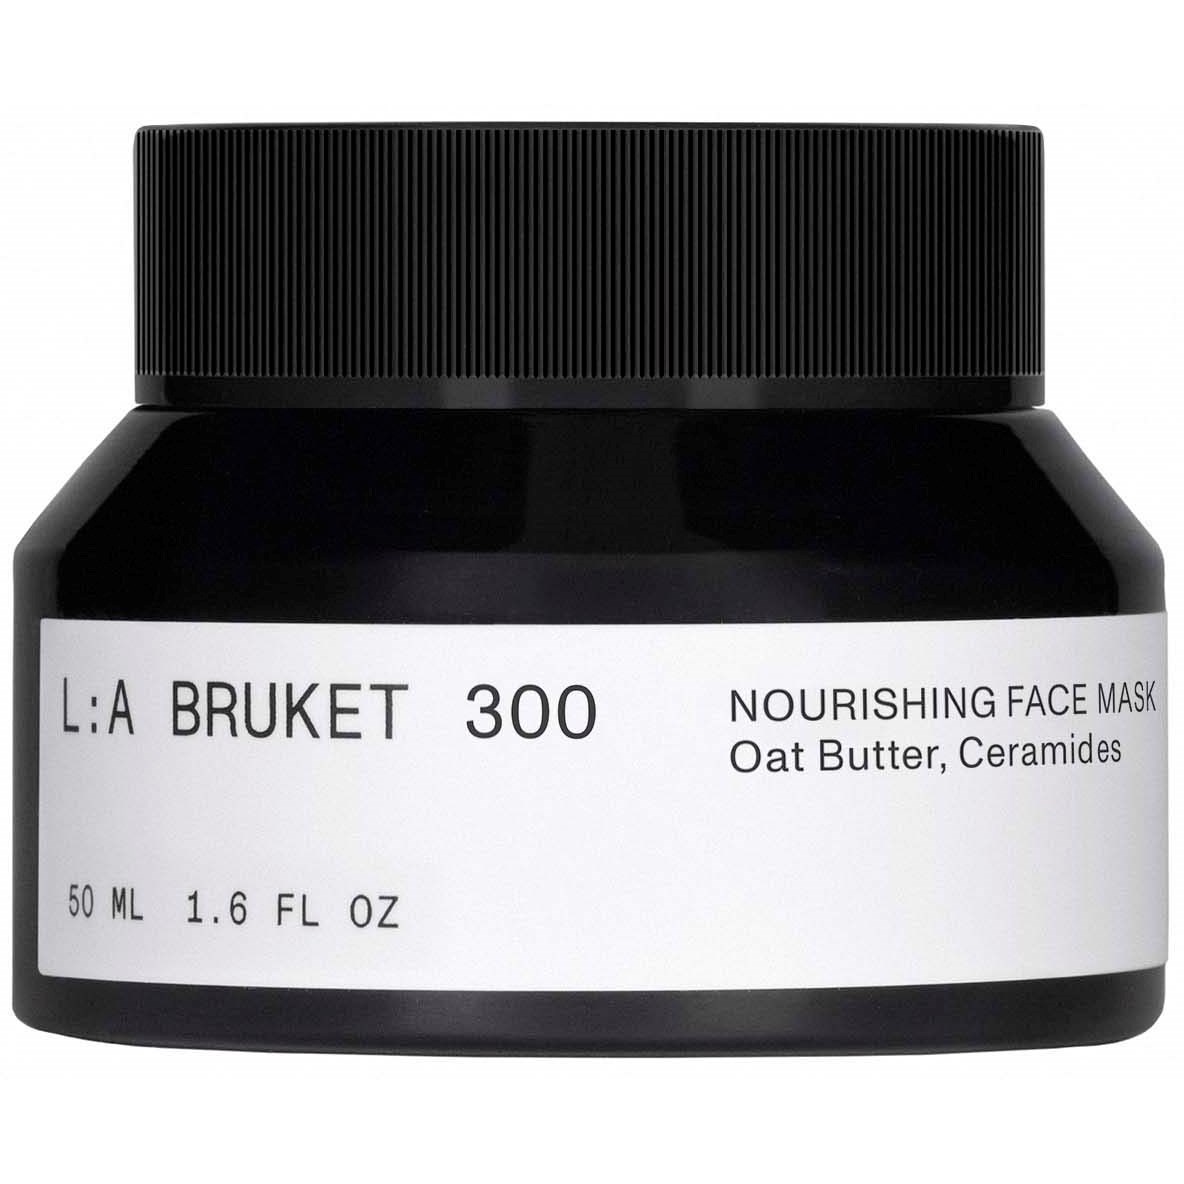 L:A Bruket 300 Nourishing Face Mask 50 ml